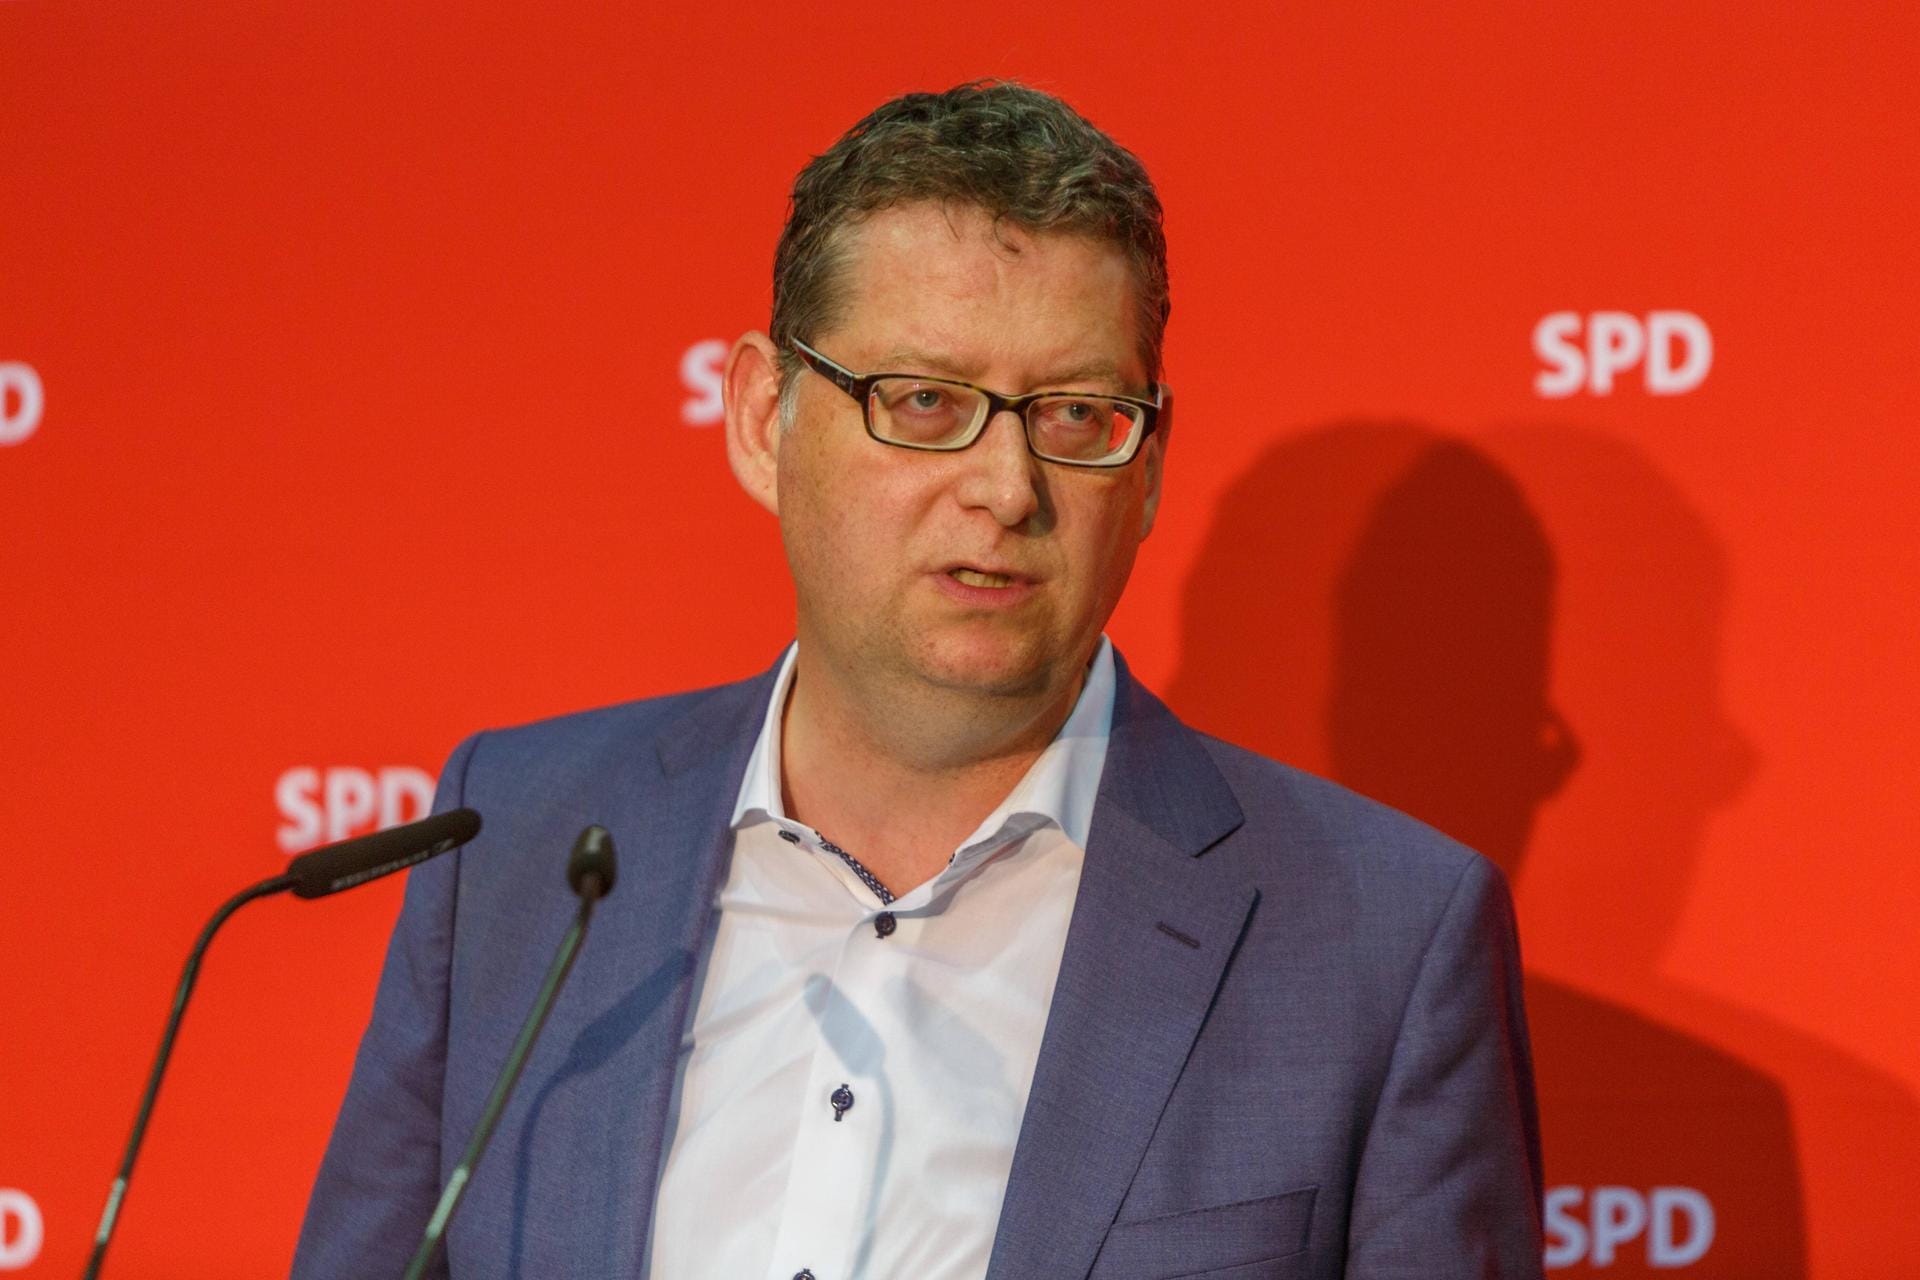 "Wir wünschen ihr eine glückliche Hand bei den anstehenden Aufgaben. Jetzt gilt's Europa wieder zusammenzuführen. Auf diesem Weg werden wir sie nach Kräften unterstützen", twitterte der kommissarische SPD-Vorsitzende Thorsten Schäfer-Gümbel.